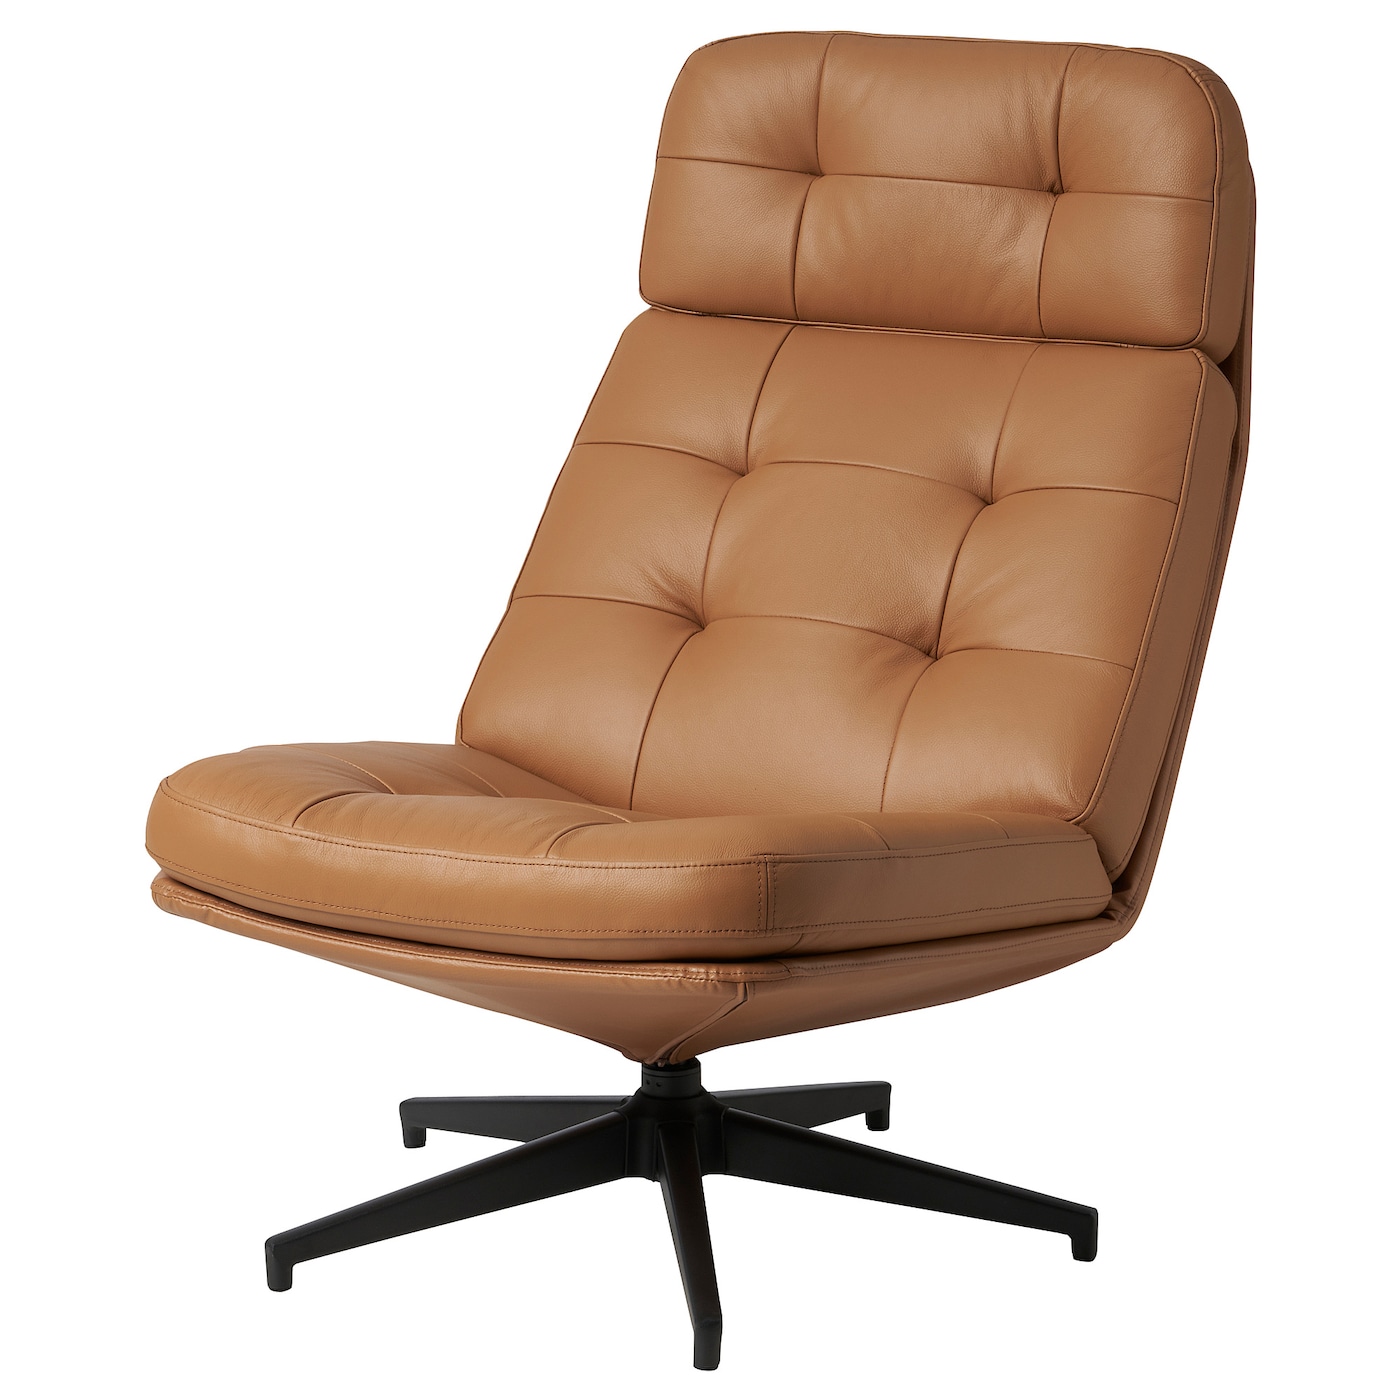 ХАВБЕРГ Вращающееся кресло, Гранн/Бомстад золотисто-коричневый HAVBERG IKEA стоматологическое кресло седло кресло регулируемое подъемное вращающееся компьютерное кресло эргономичные универсальные детали для оф